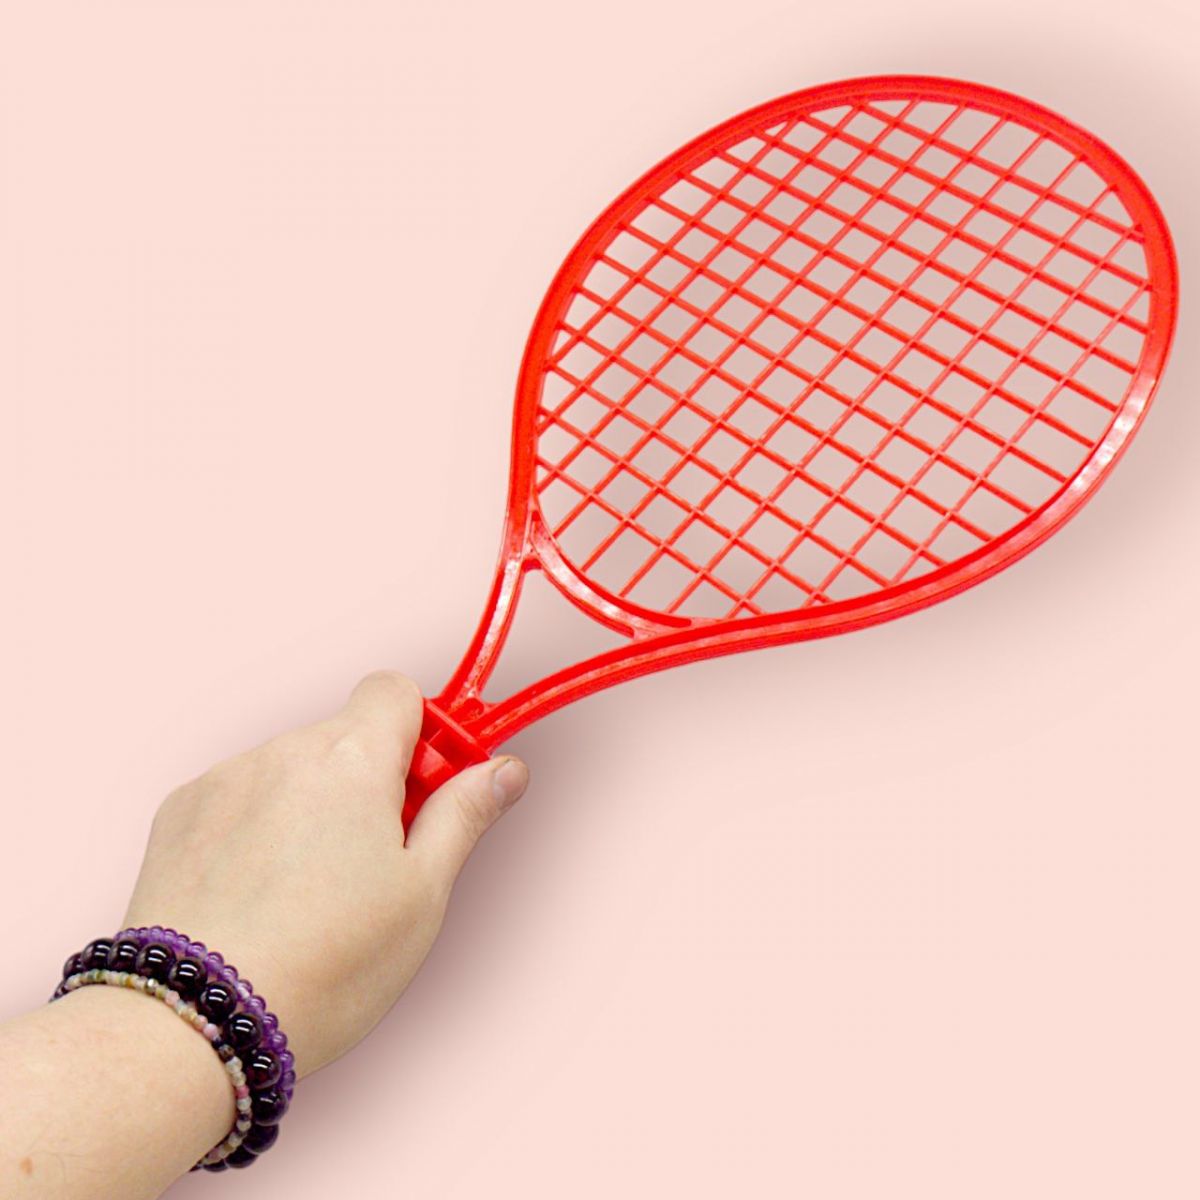 Набір для тенісу (2 ракетки і мячик) червоний+ жовтий